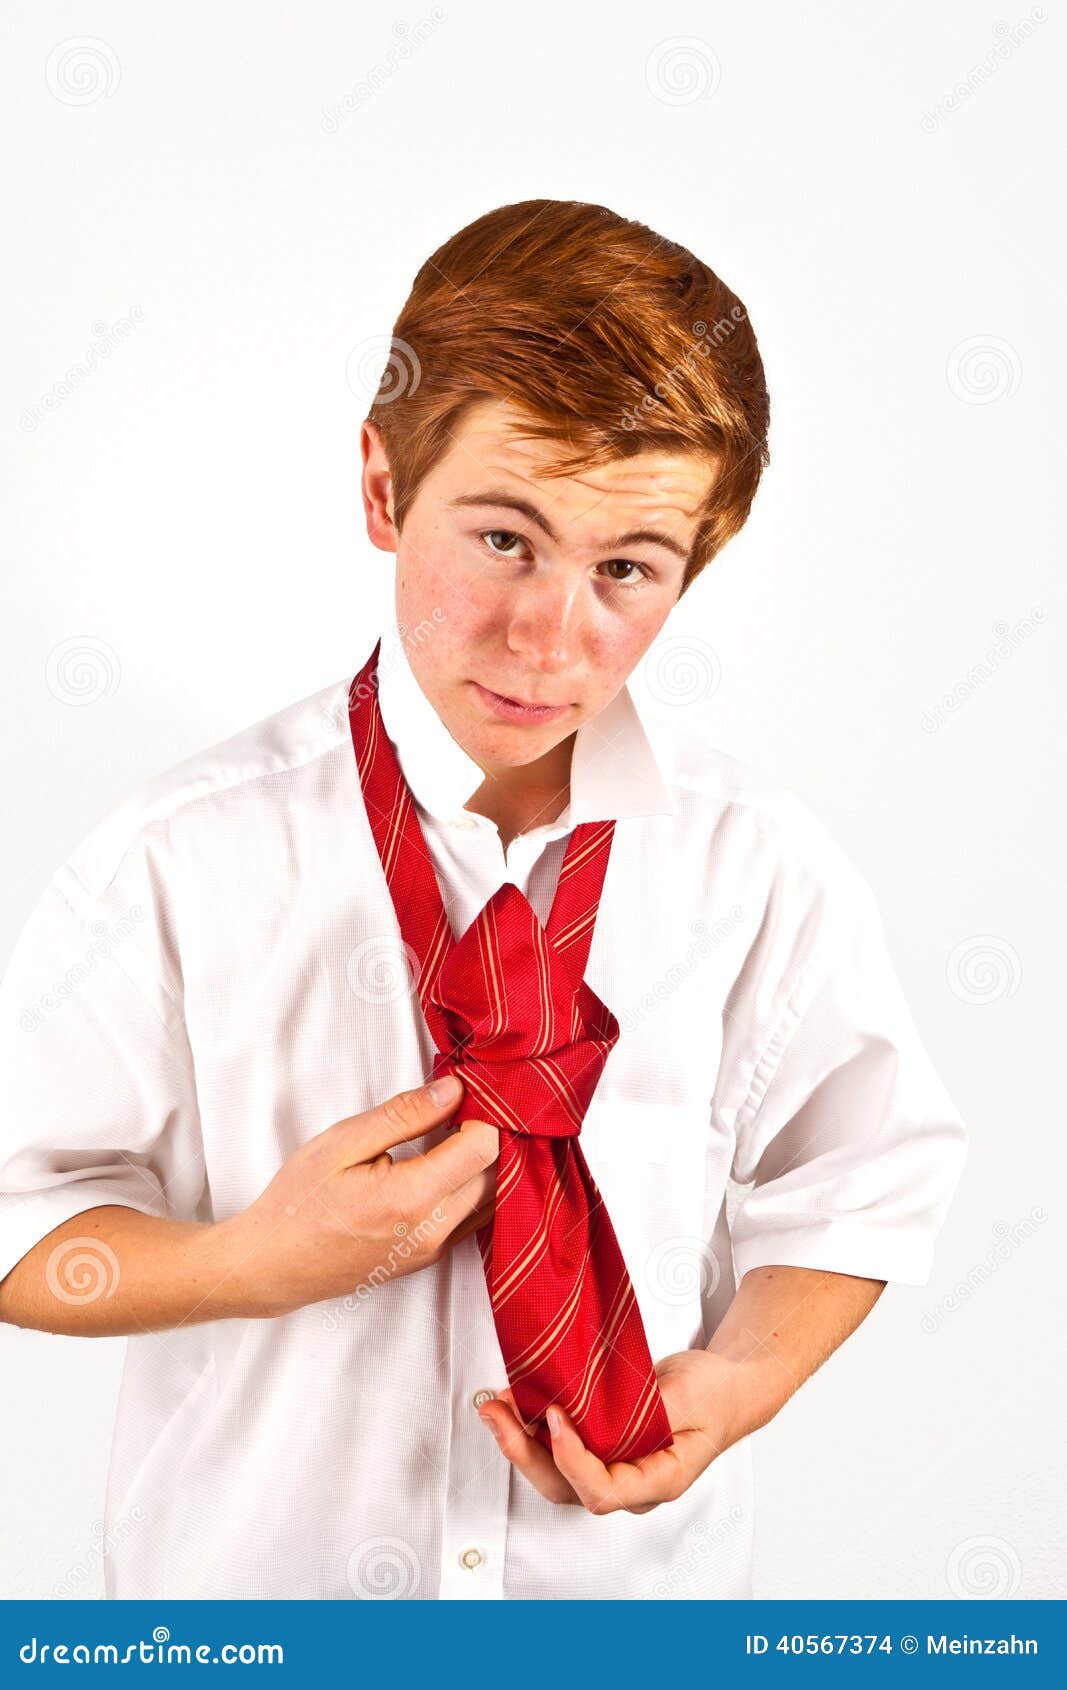 Где завязывают мальчиков. Красный галстук для мальчика. Красный галстук для подростка мальчика. Красный галстук повяжу. Мальчику повязывают галстук.